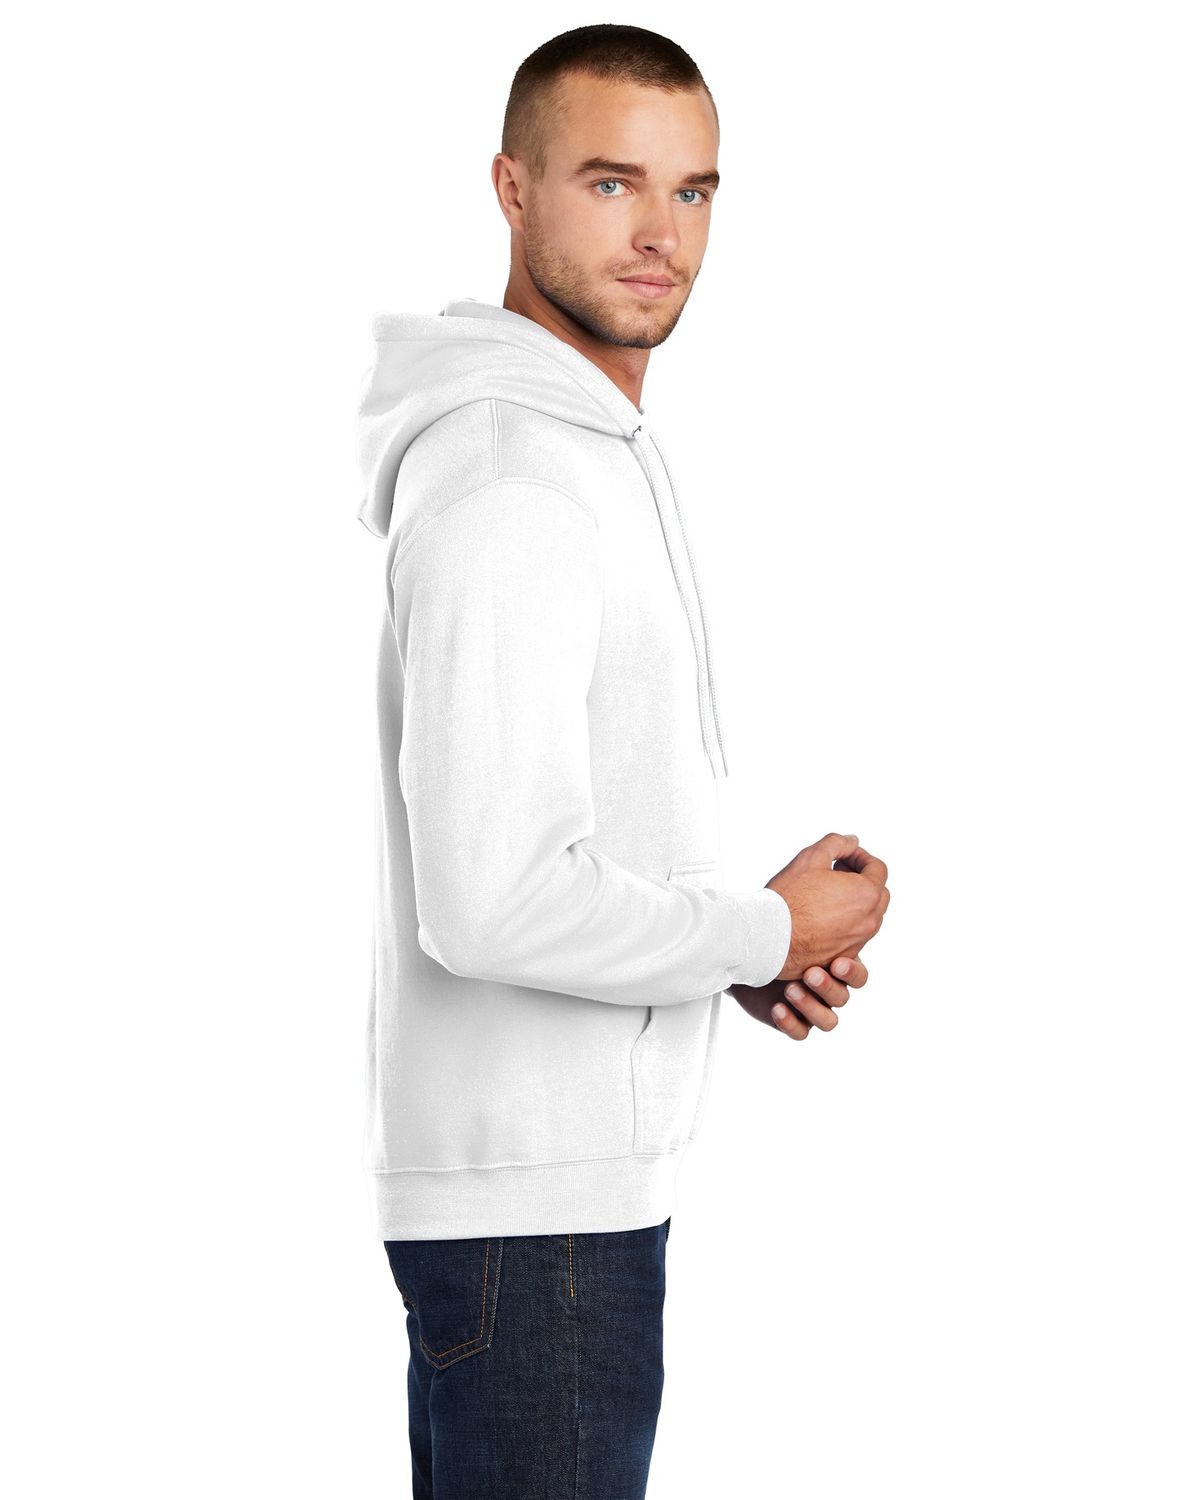 'Port & Company PC78HT mpany  Tall Core Fleece Pullover Hooded Sweatshirt'